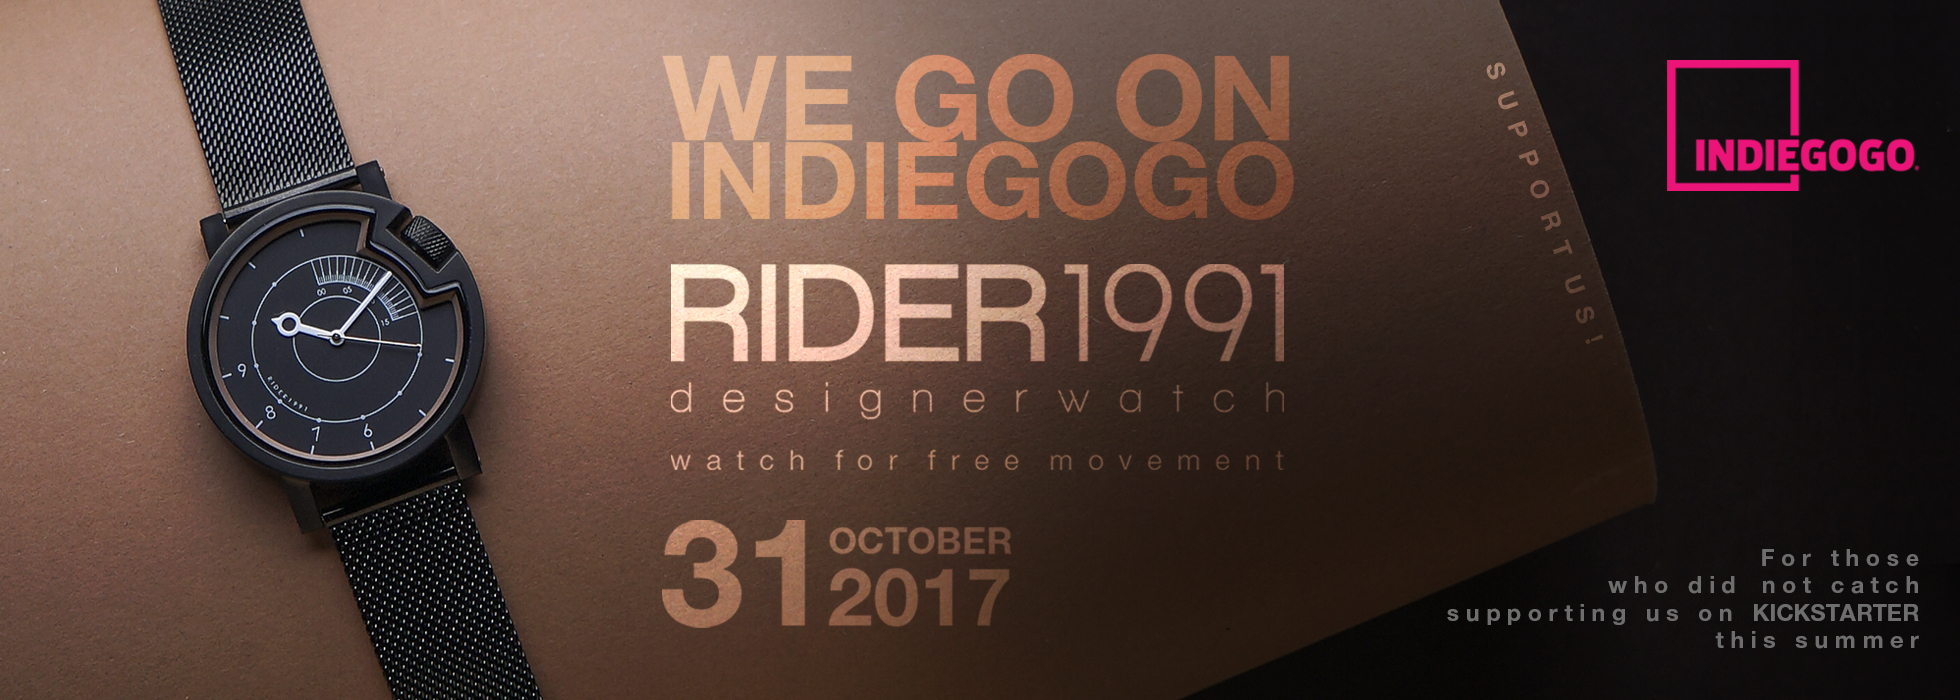 rider_indie1